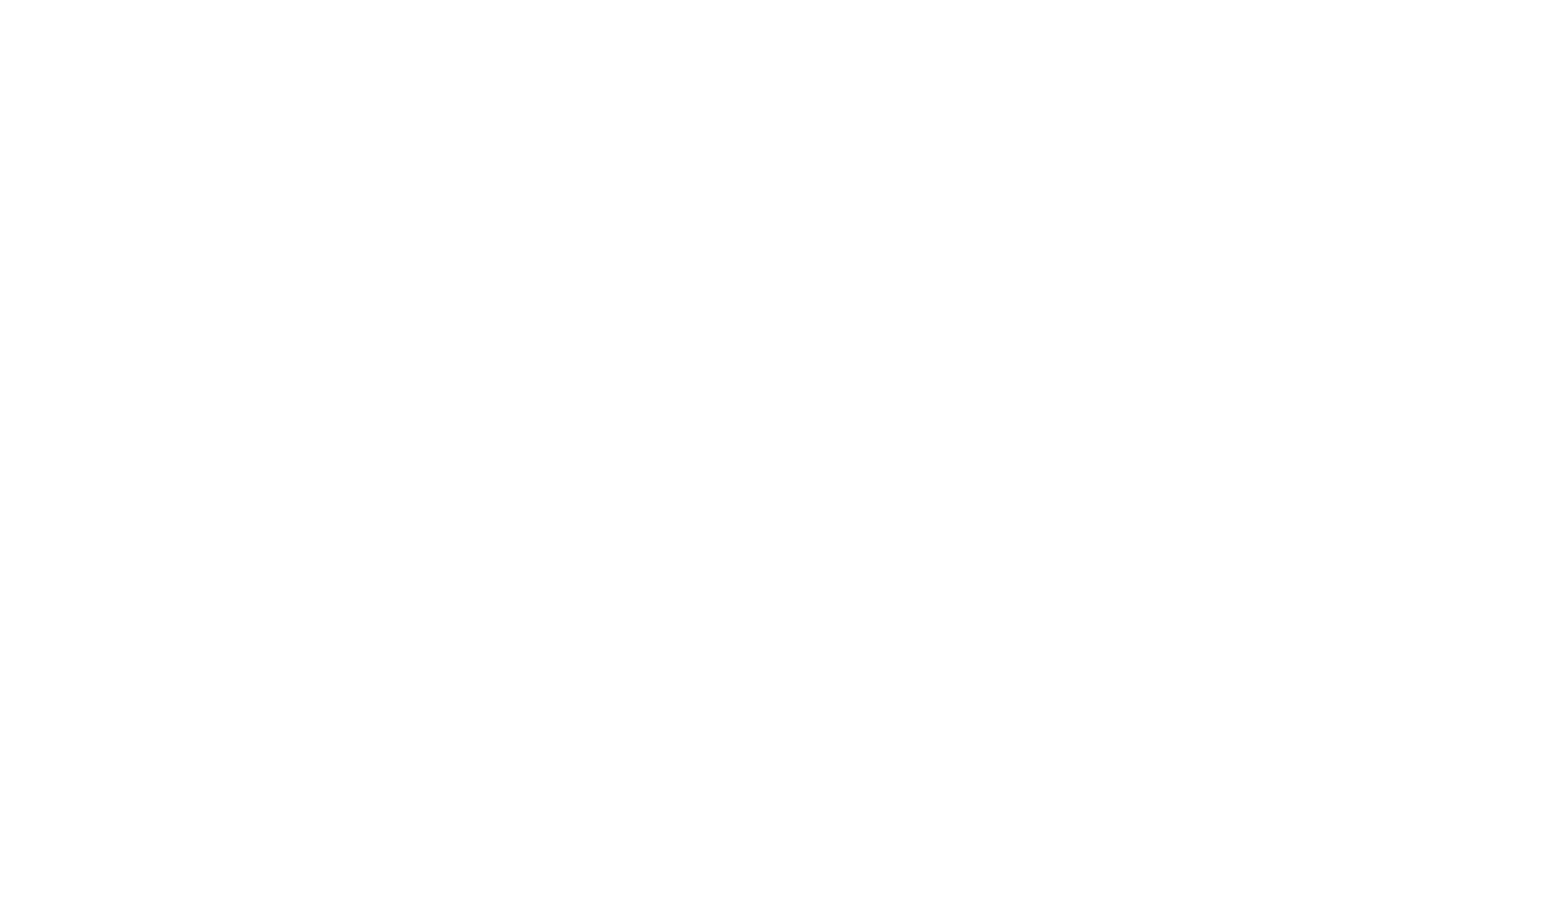 ESU-Lab